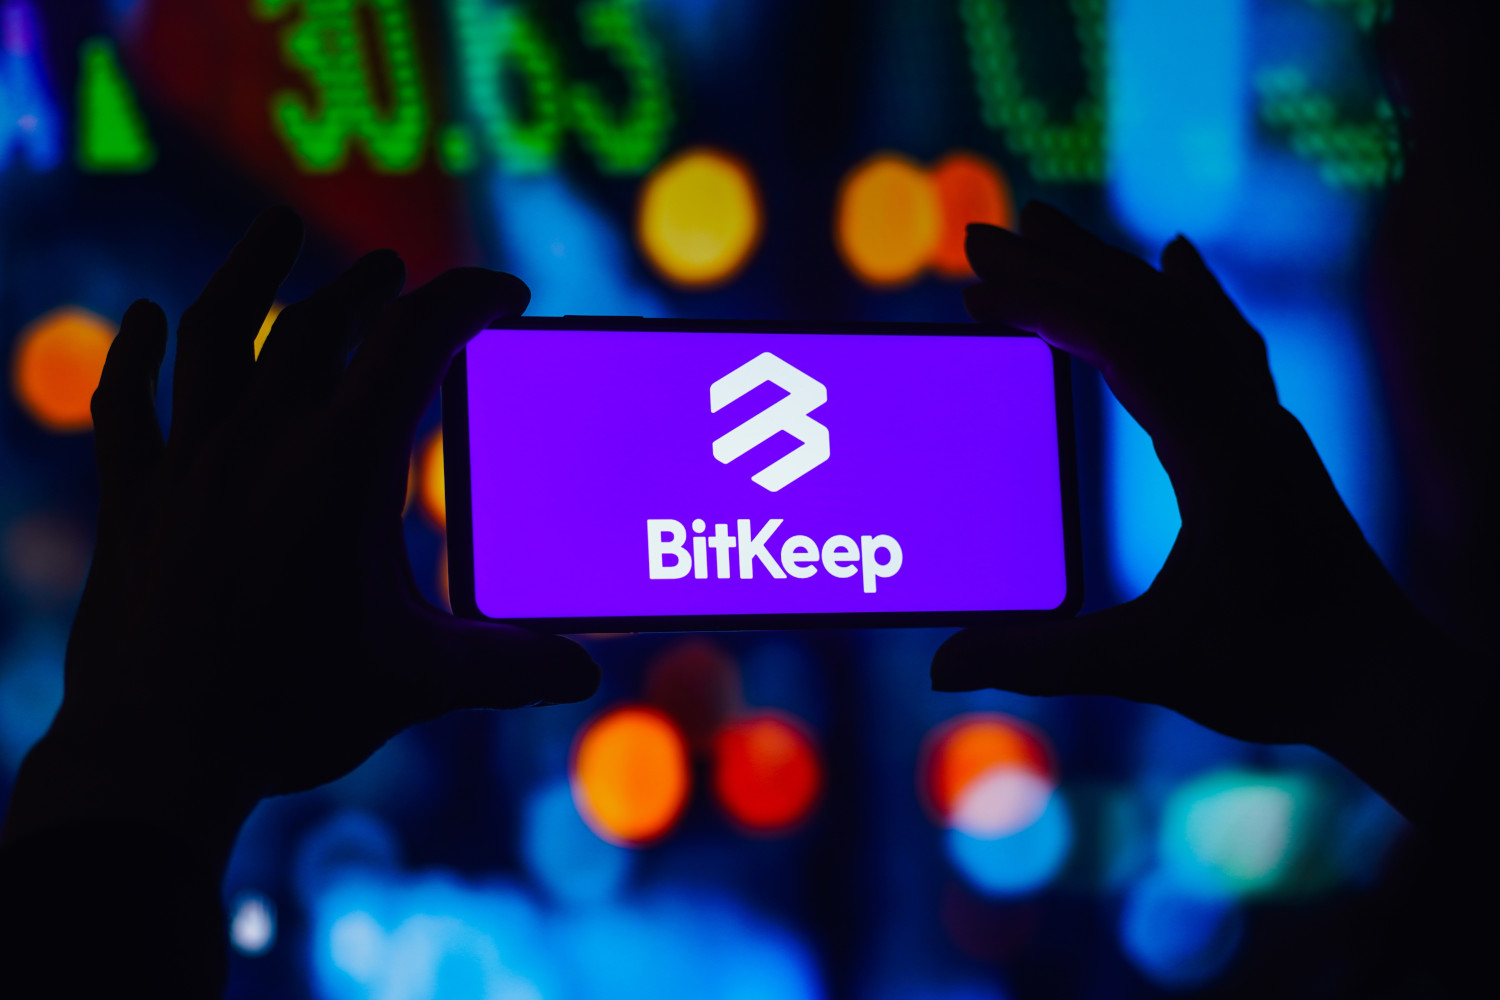 BitKeep completes compensation for $8M APK exploit, announces rebranding